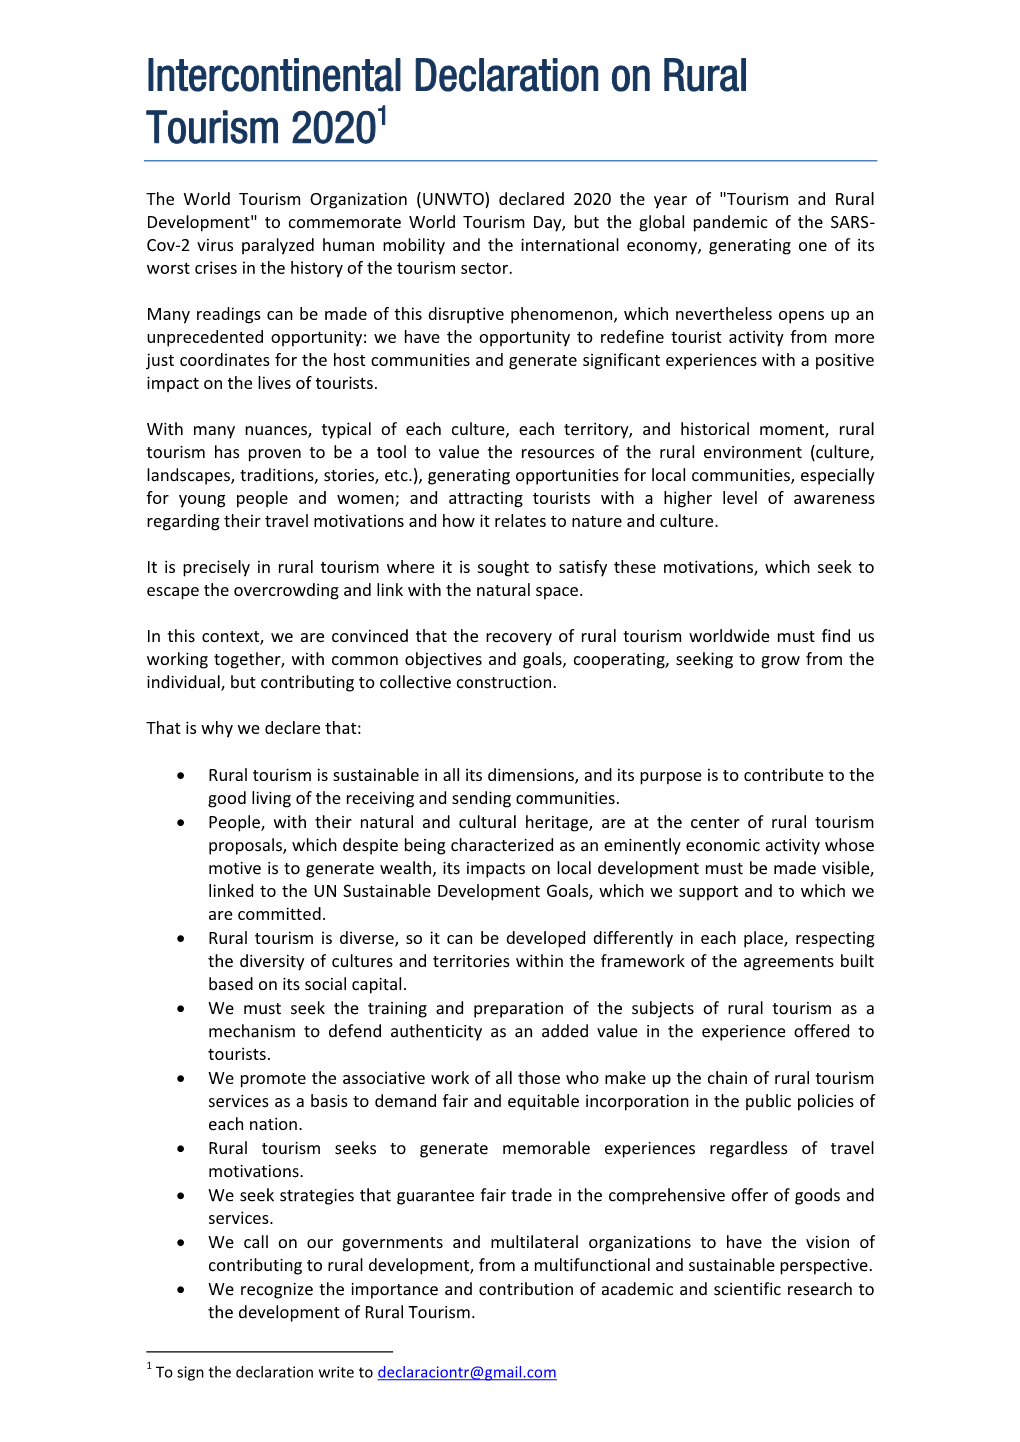 Intercontinental Declaration on Rural Tourism 20201